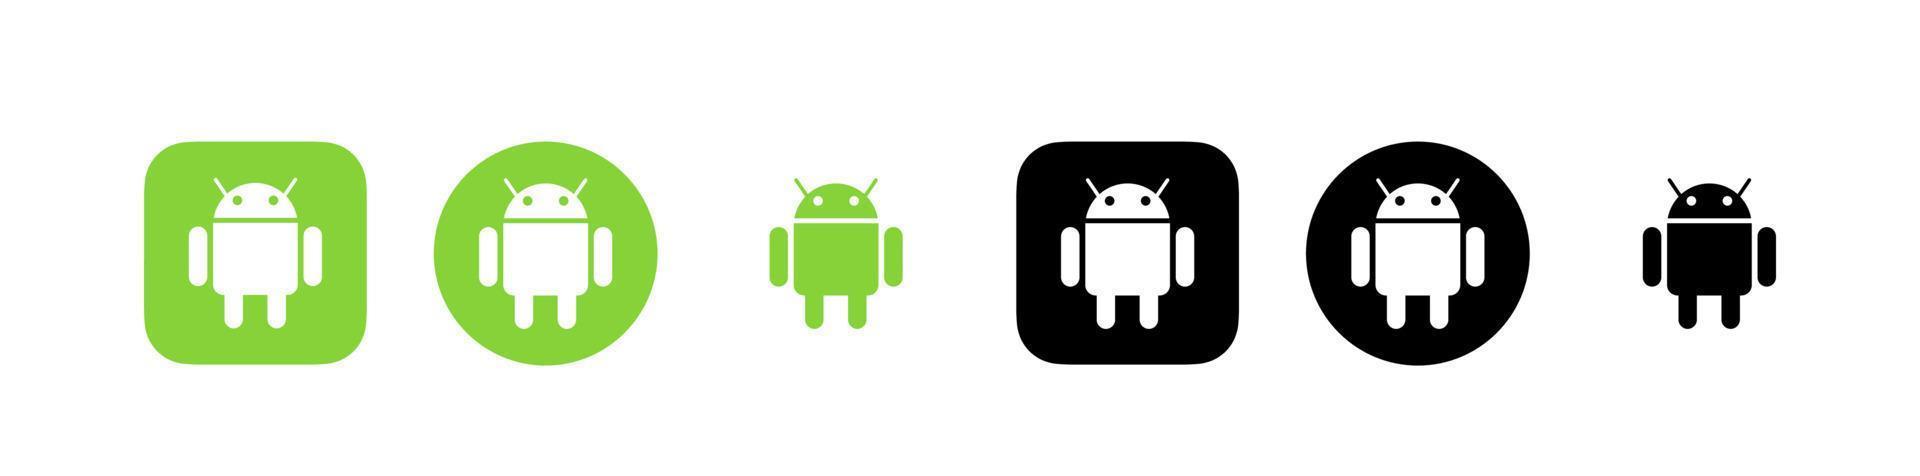 androide logo vector, androide icono gratis vector